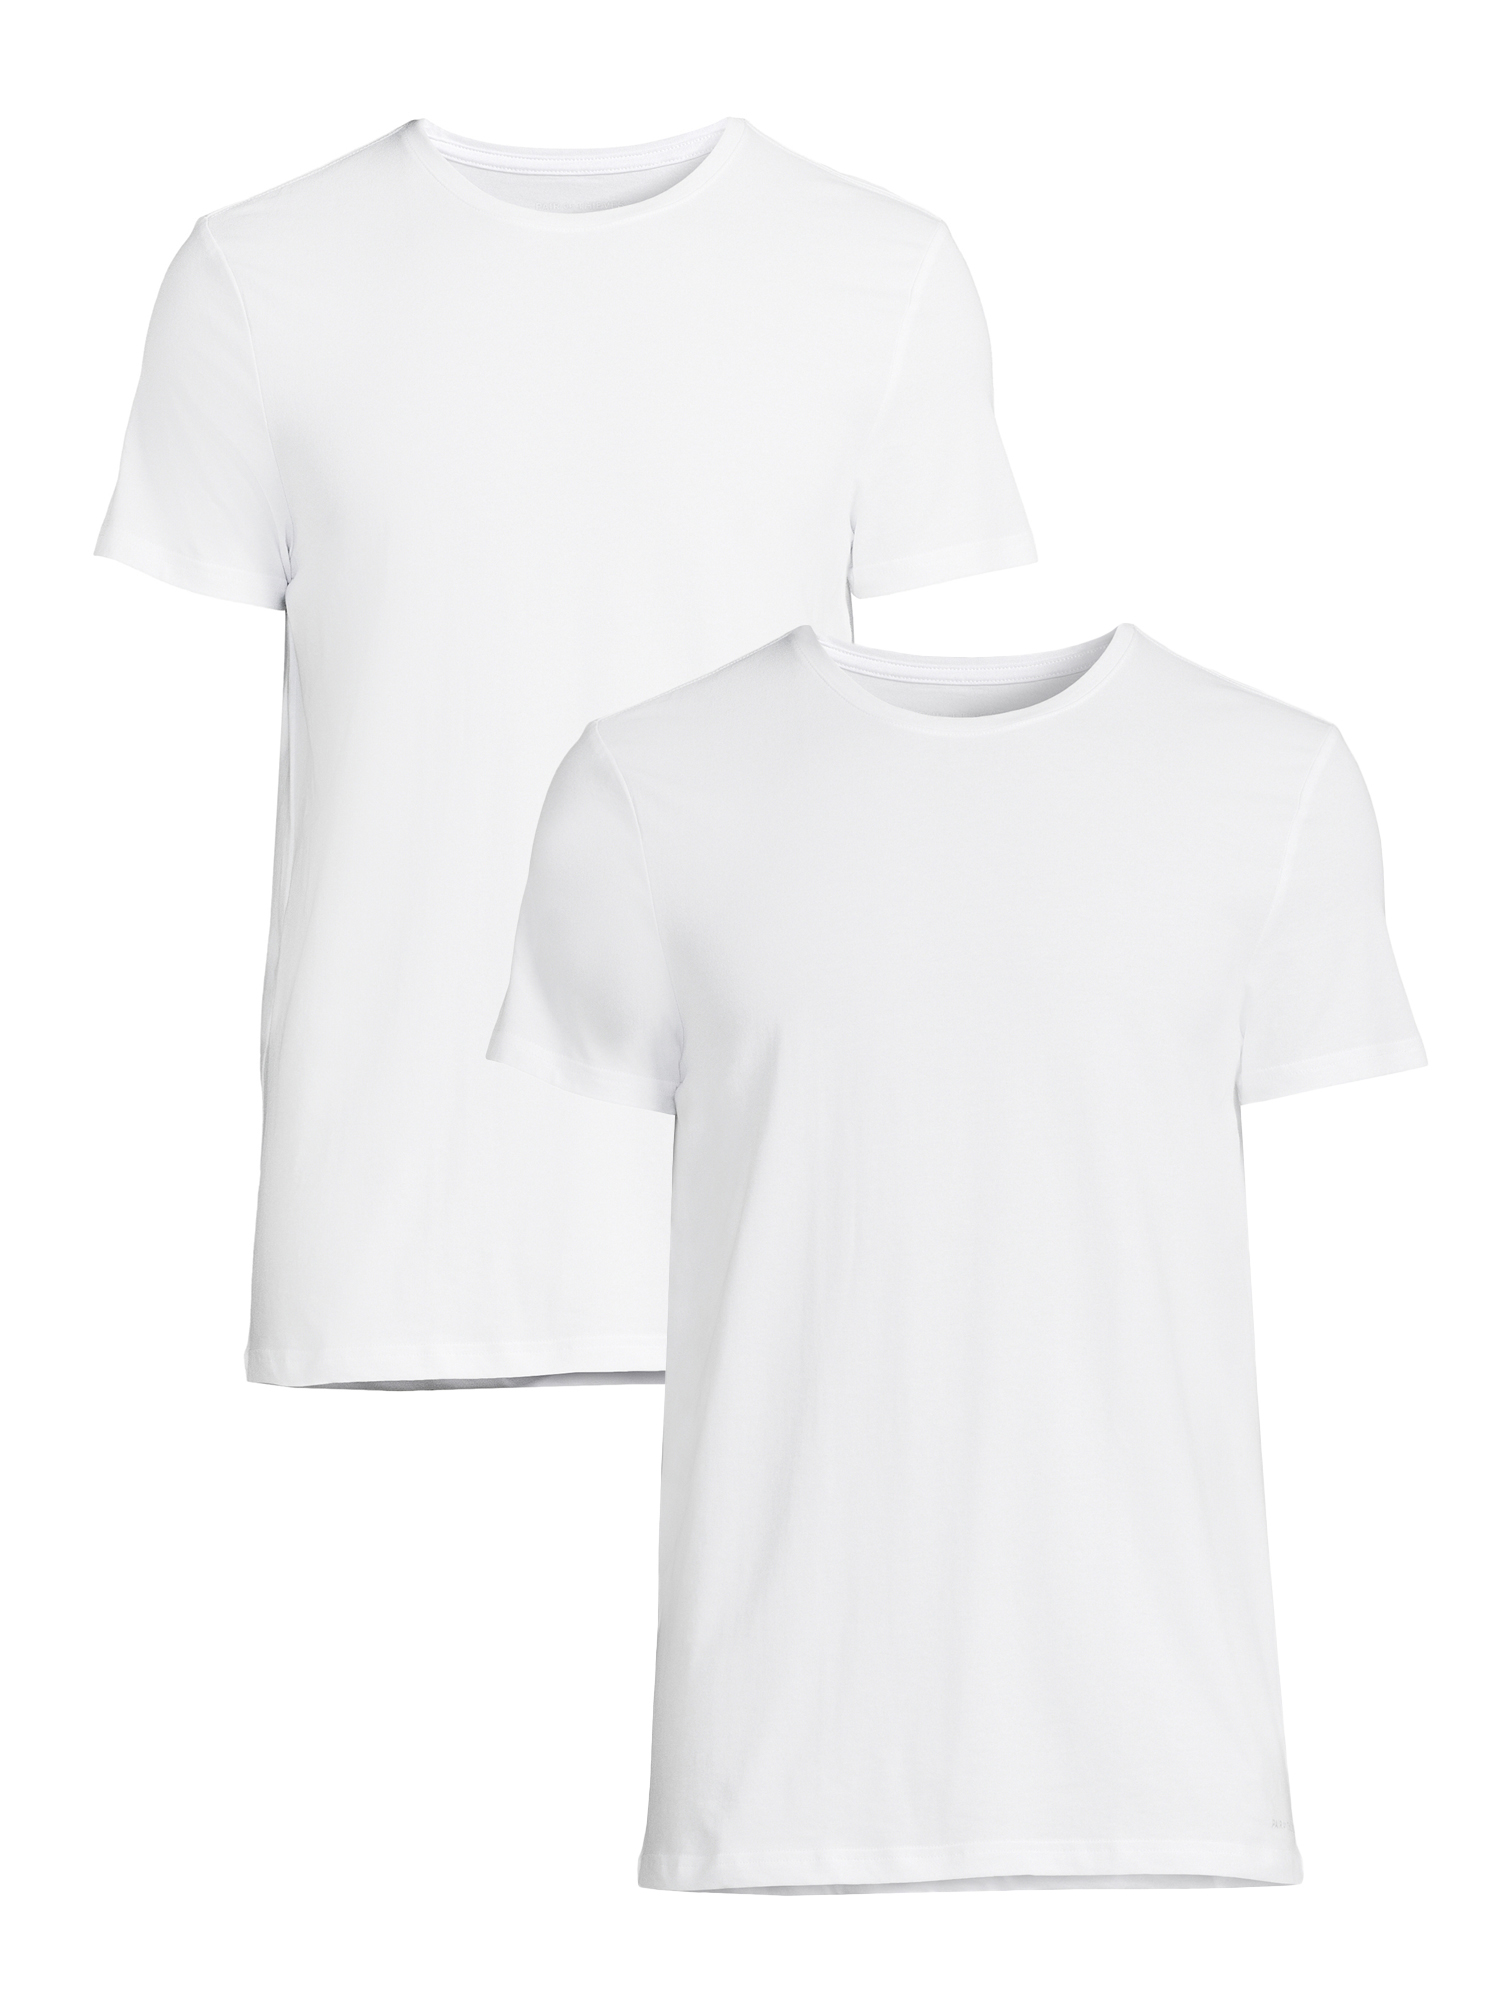 Hanes Men's Fresh IQ White V-Neck T-Shirt 6+1 Free Bonus Pack - Walmart.com